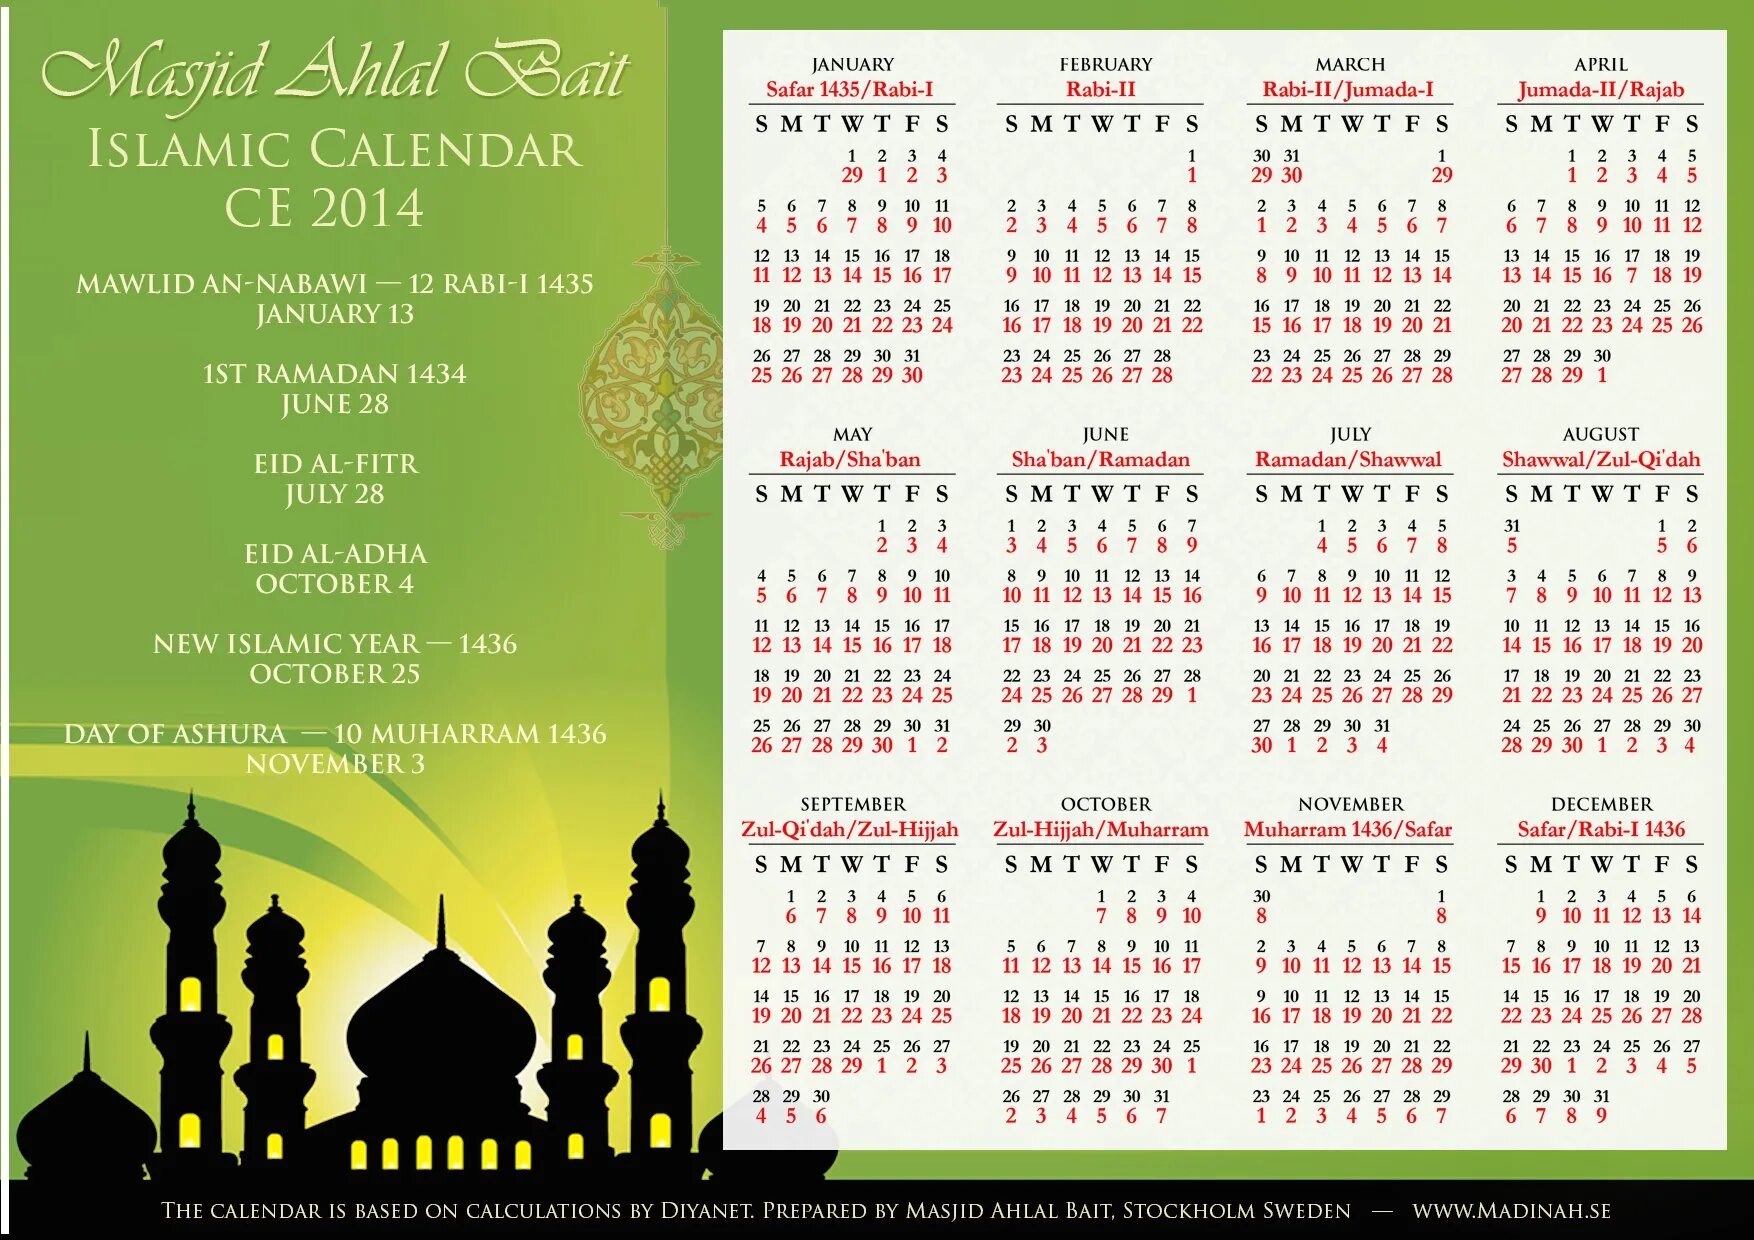 Месяцы на арабском языке. Исламский календарь. Арабский календарь. Месяцы мусульманского календаря. Календарь Ислама.